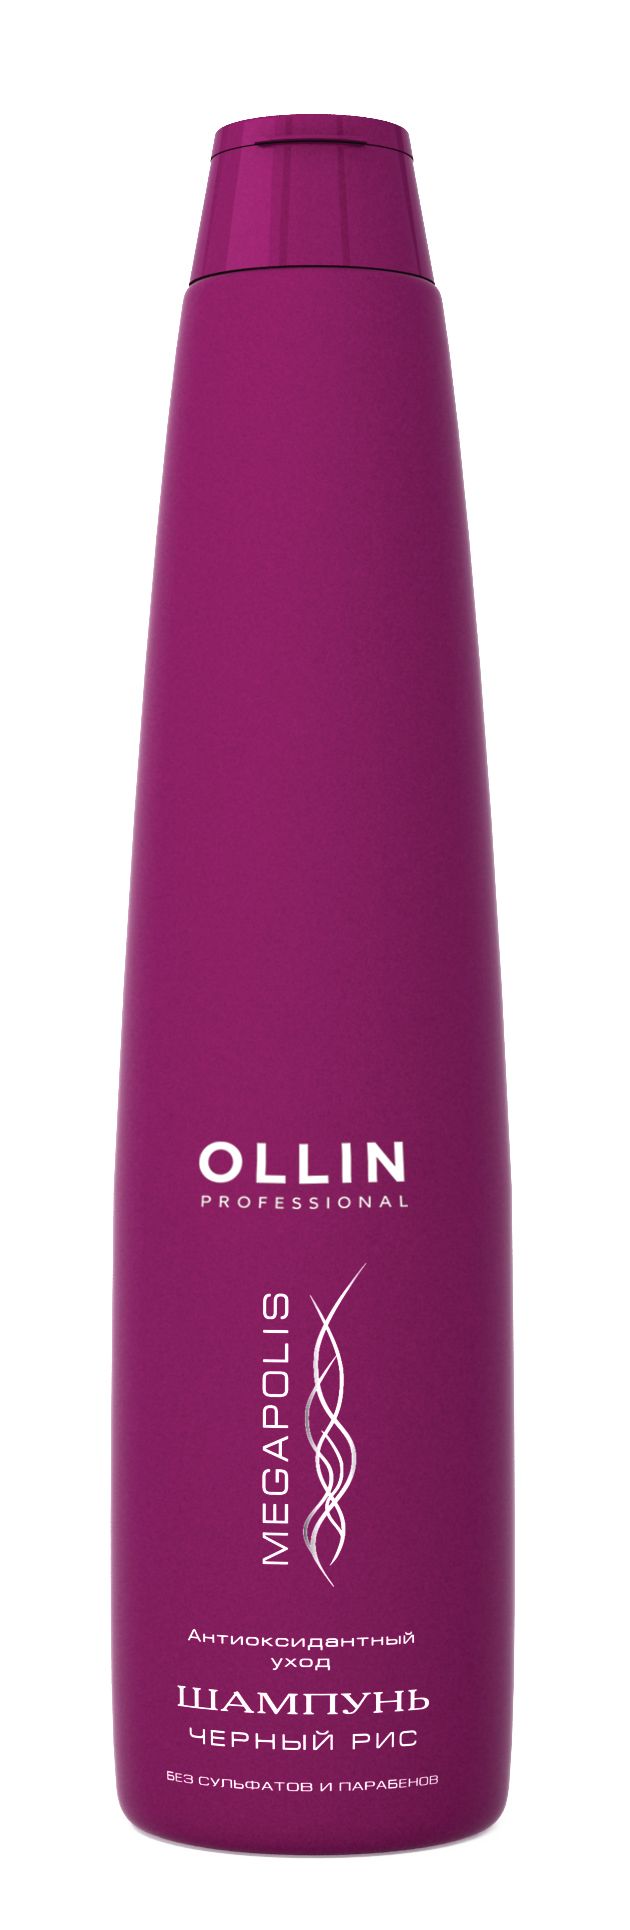 Ollin Professional Megapolis Shampoo Black Rise - Шампунь на основе черного риса 400 мл (безсульфатный) Ollin Professional (Россия) купить по цене 1 135 руб.